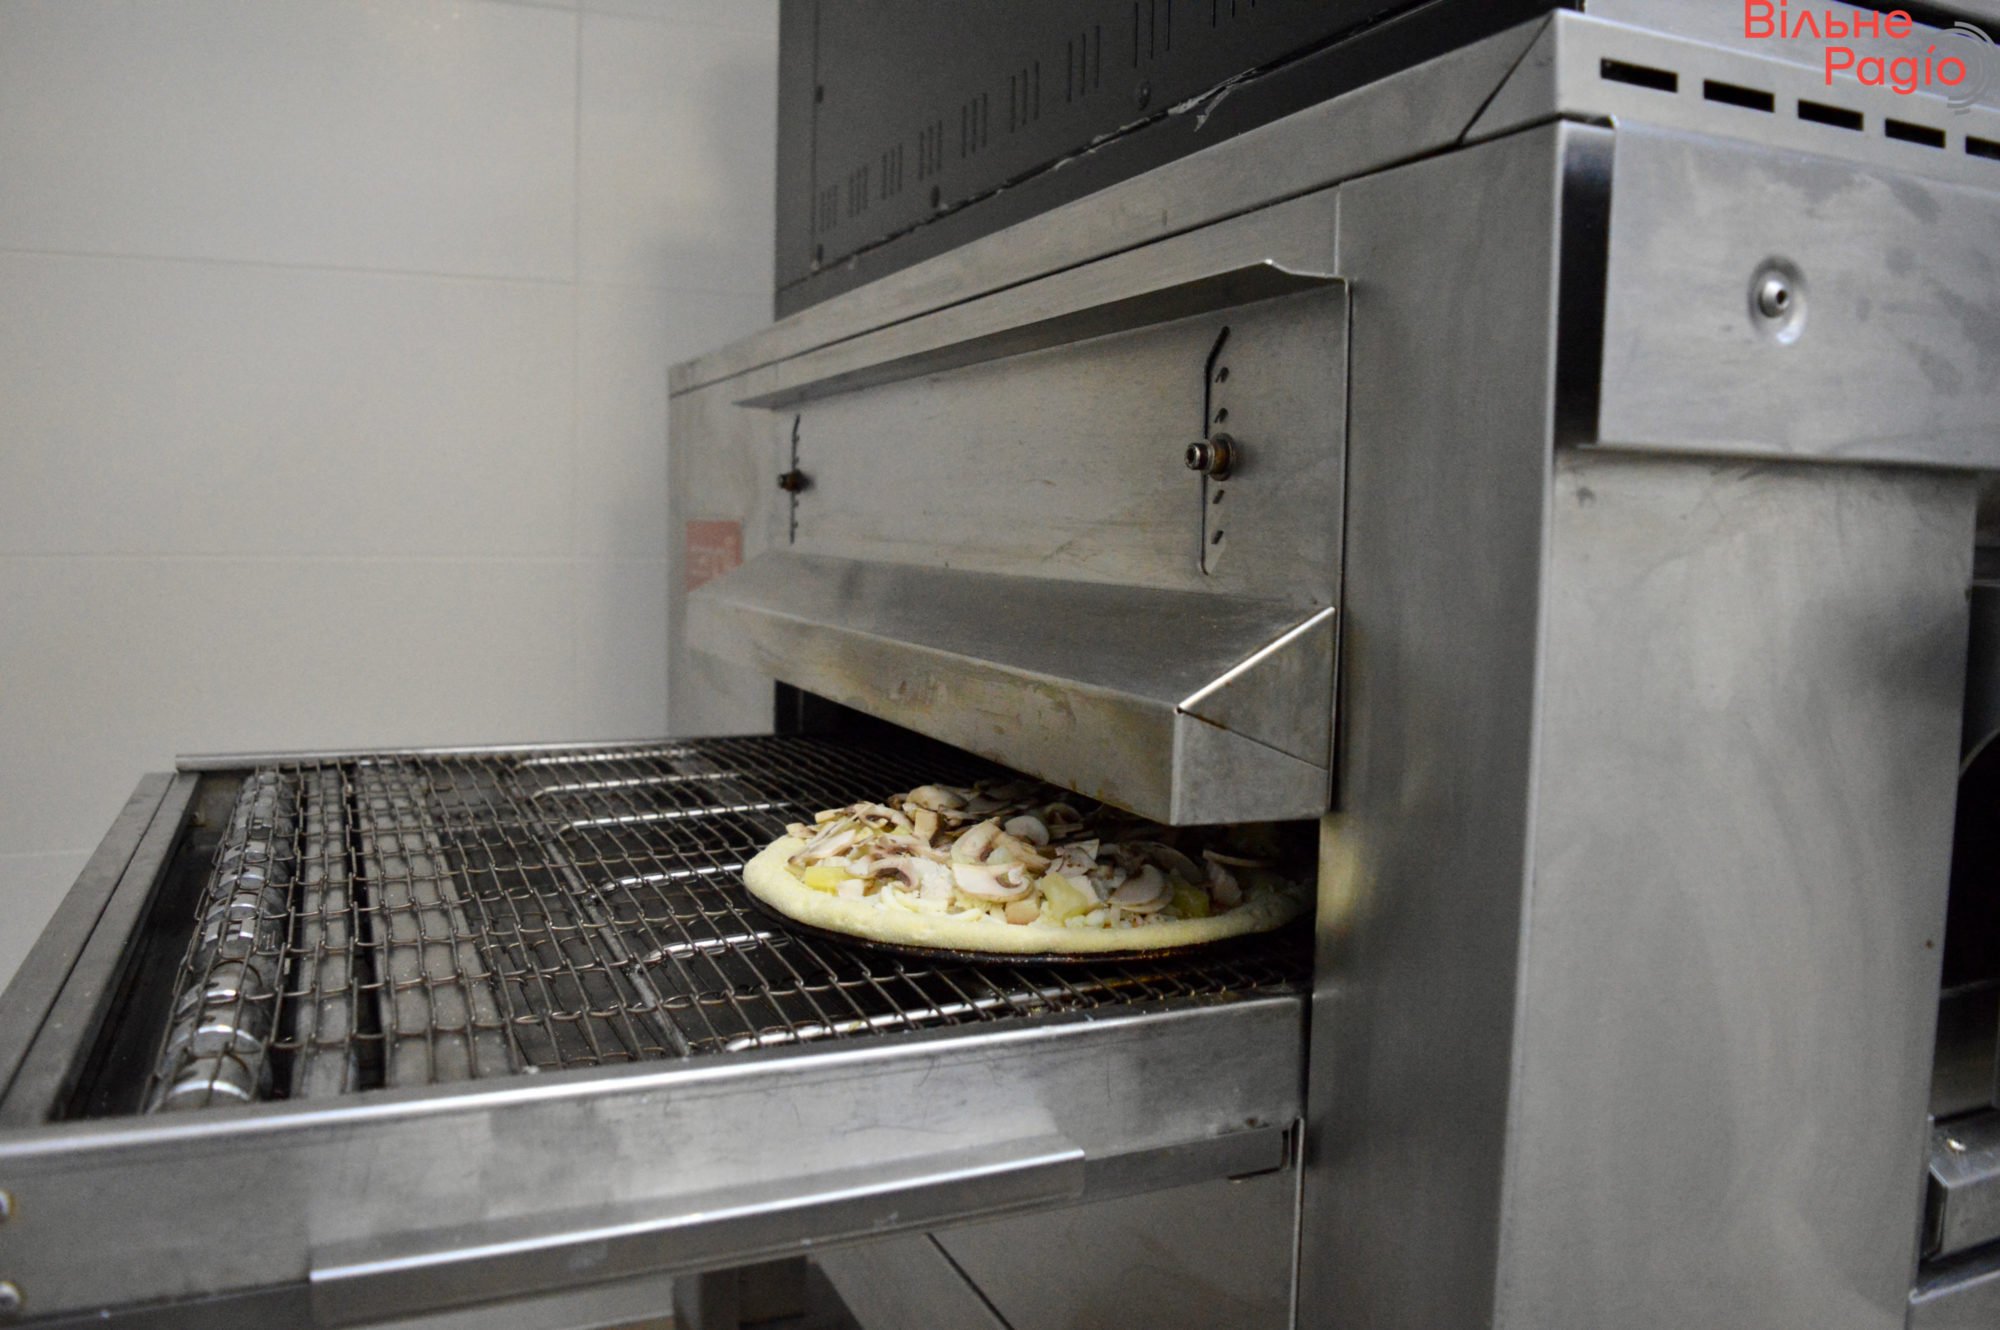 Східна піца у Києві: як працює мережа, яка пекла по 1500 благодійних піц на Донеччині, і витримує тісто по 3 дні (репортаж) 4